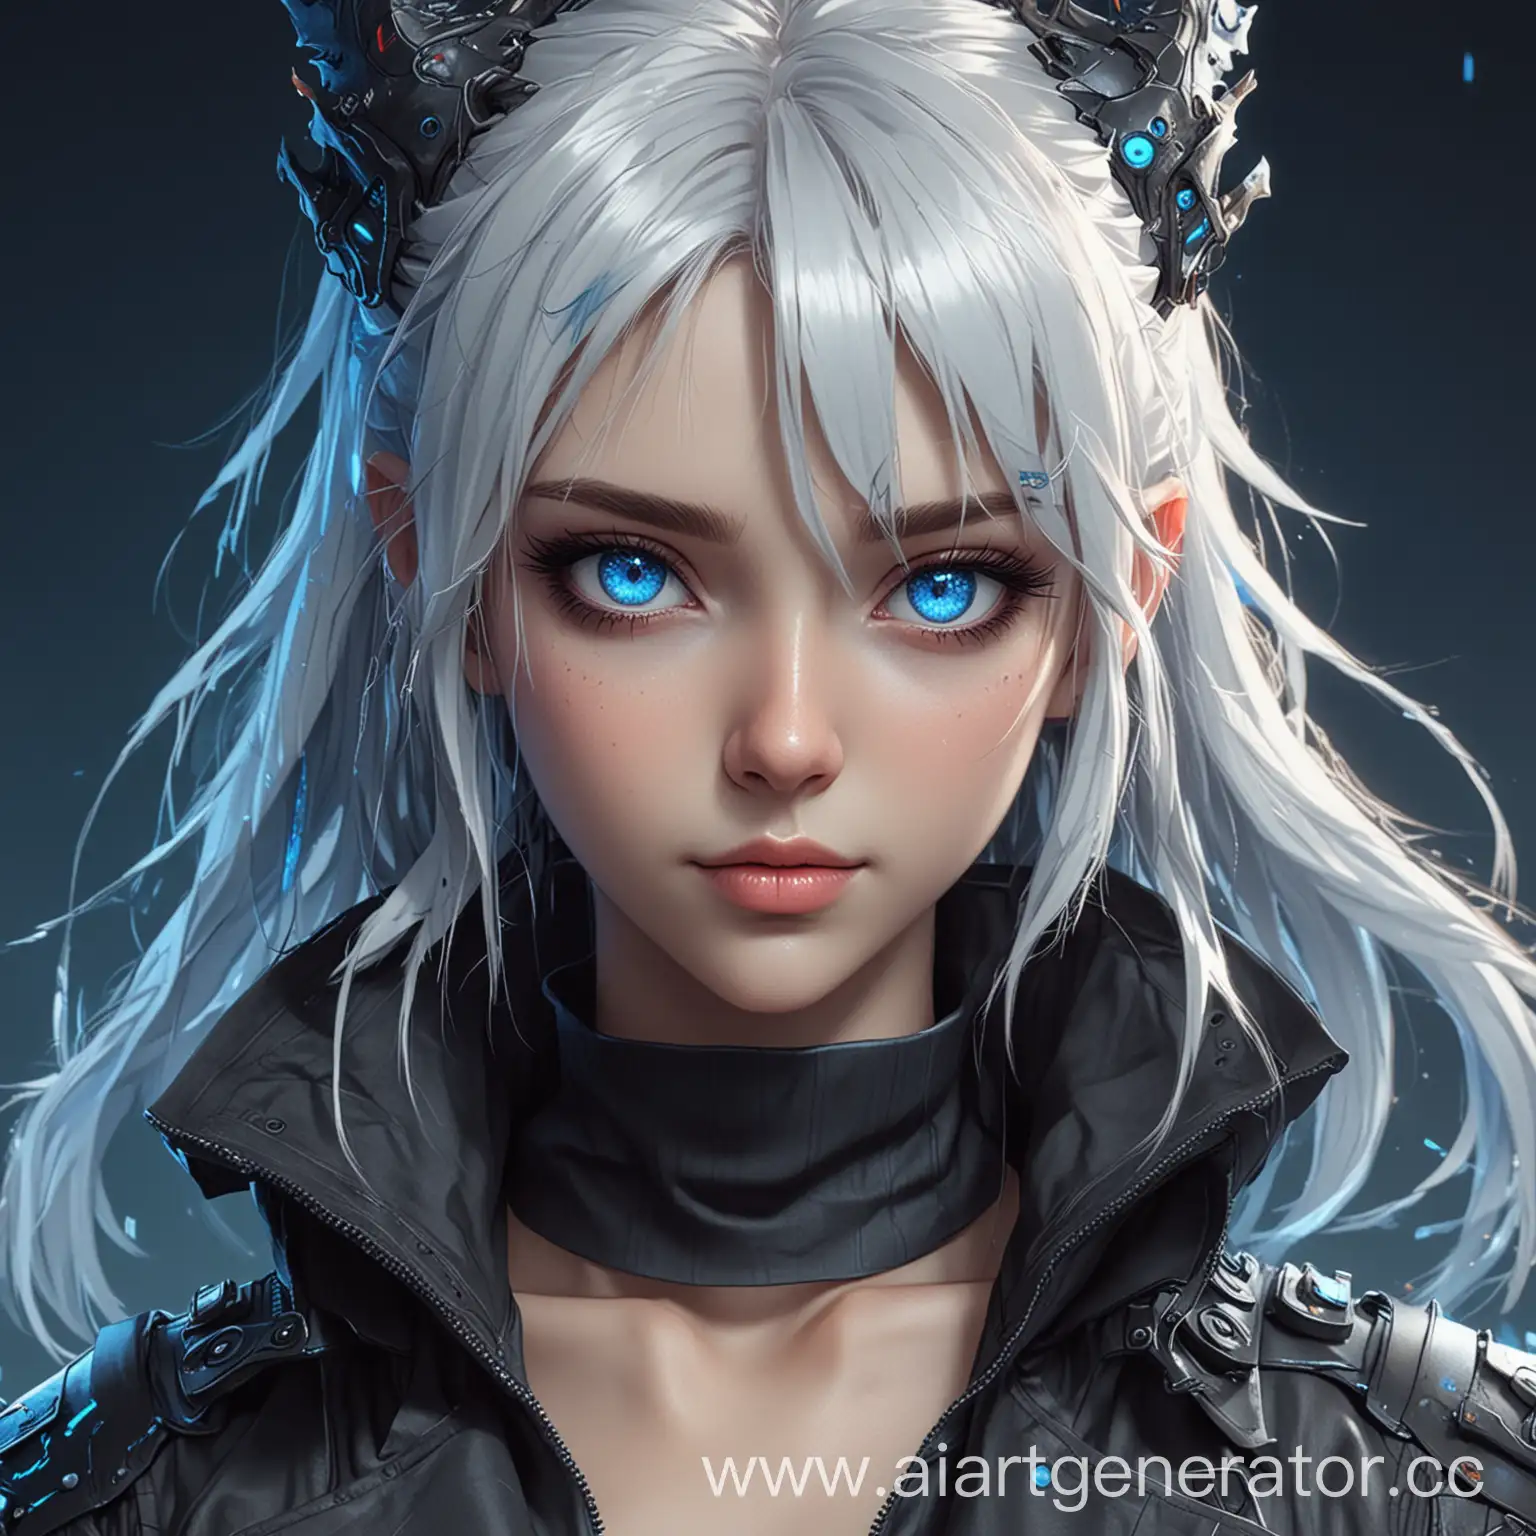 Нарисуй в стиле аниме девушку-дракона с синими глазами, одежда в стиле киберпанк